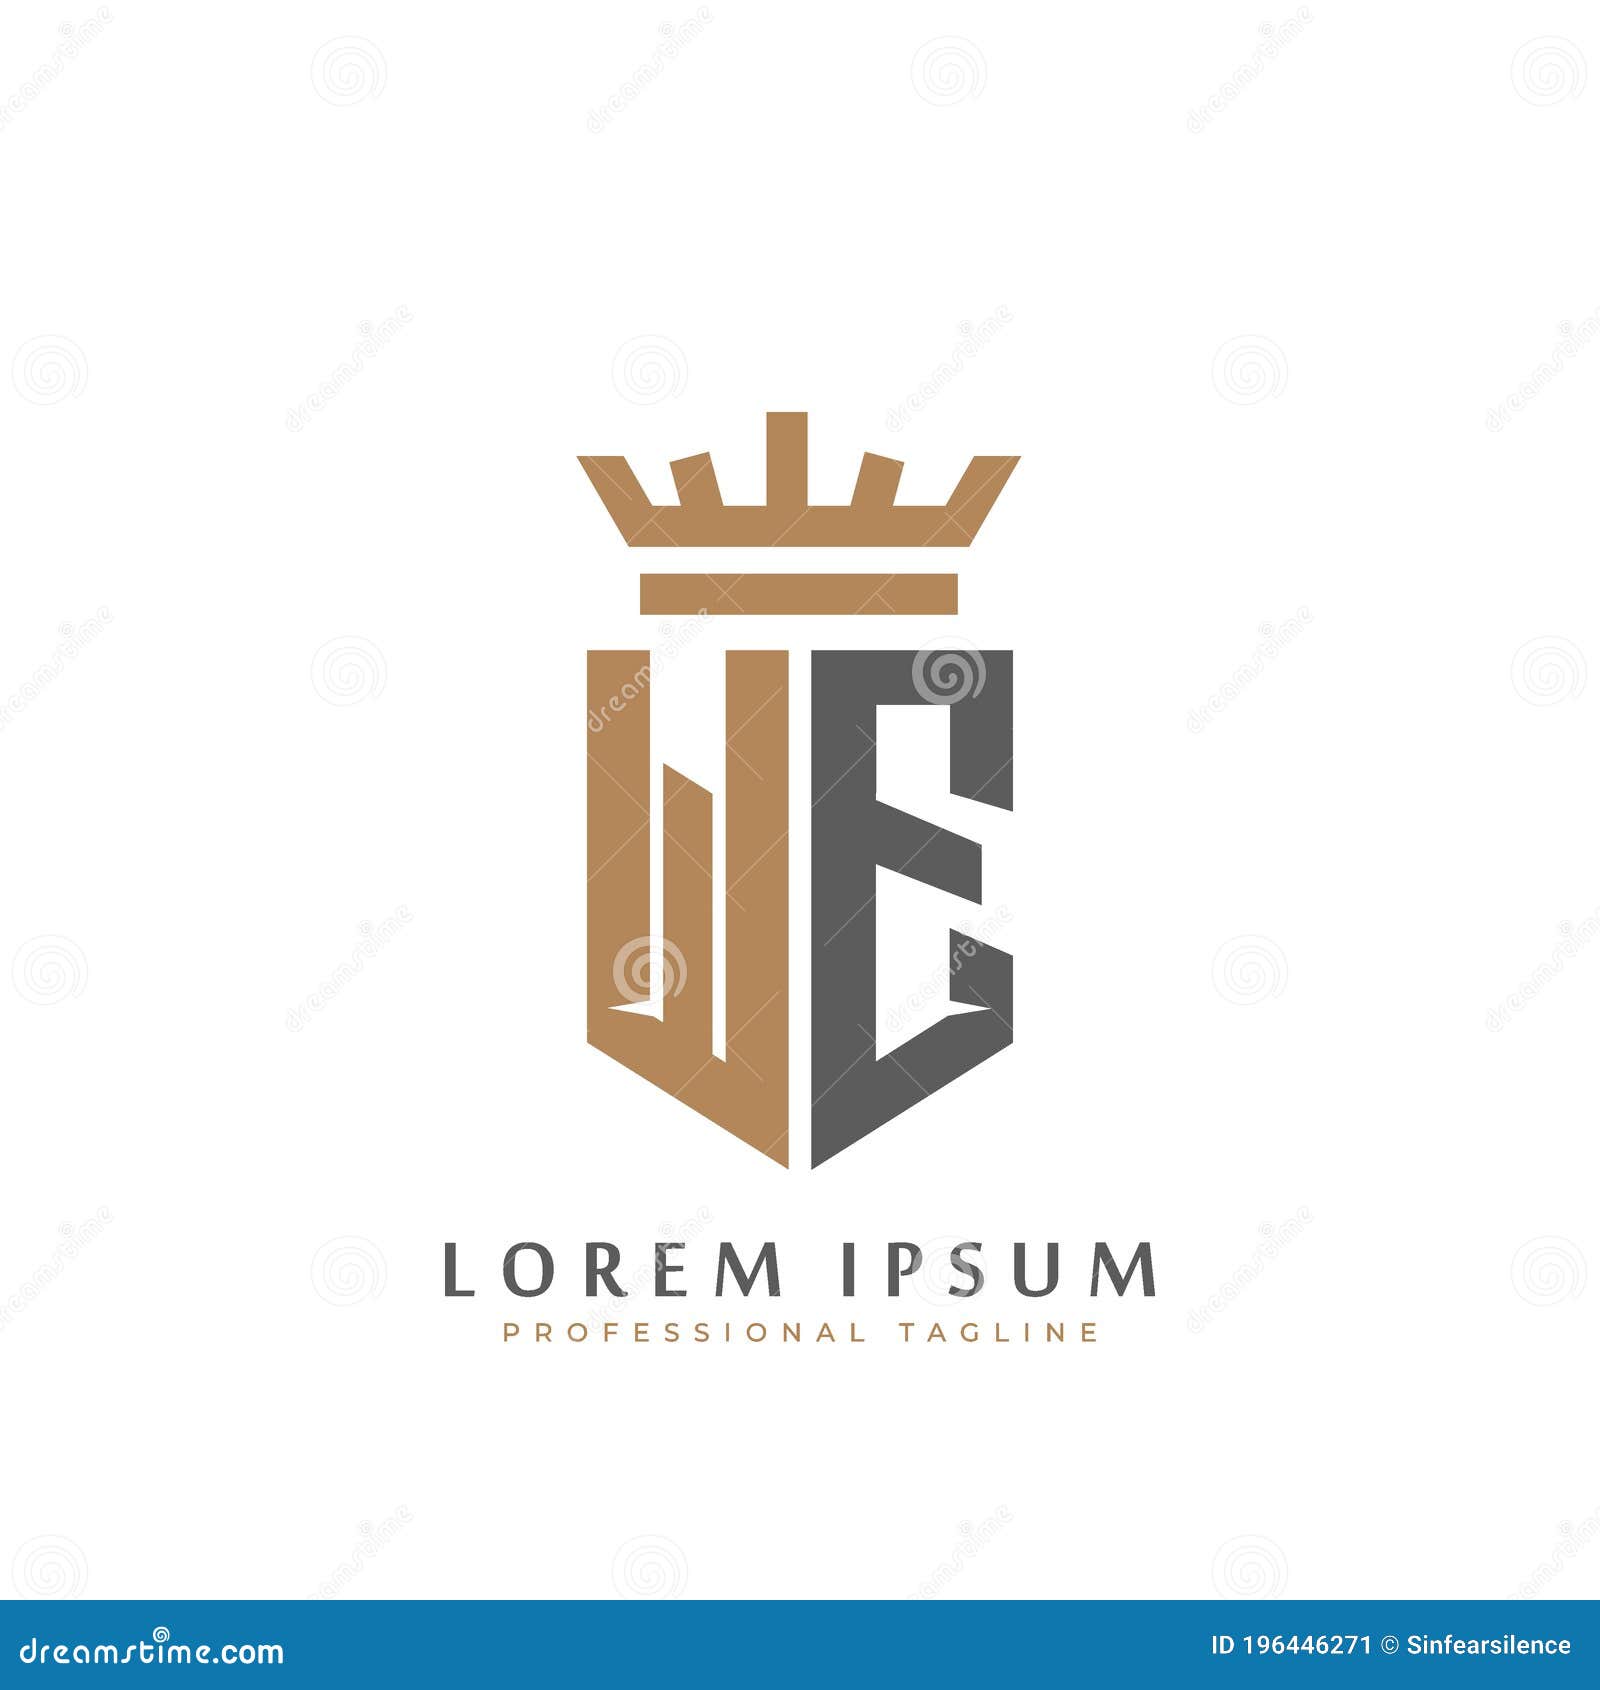 Premium Vector  Initials pm letter business logo design alphabet icon  vector monogram